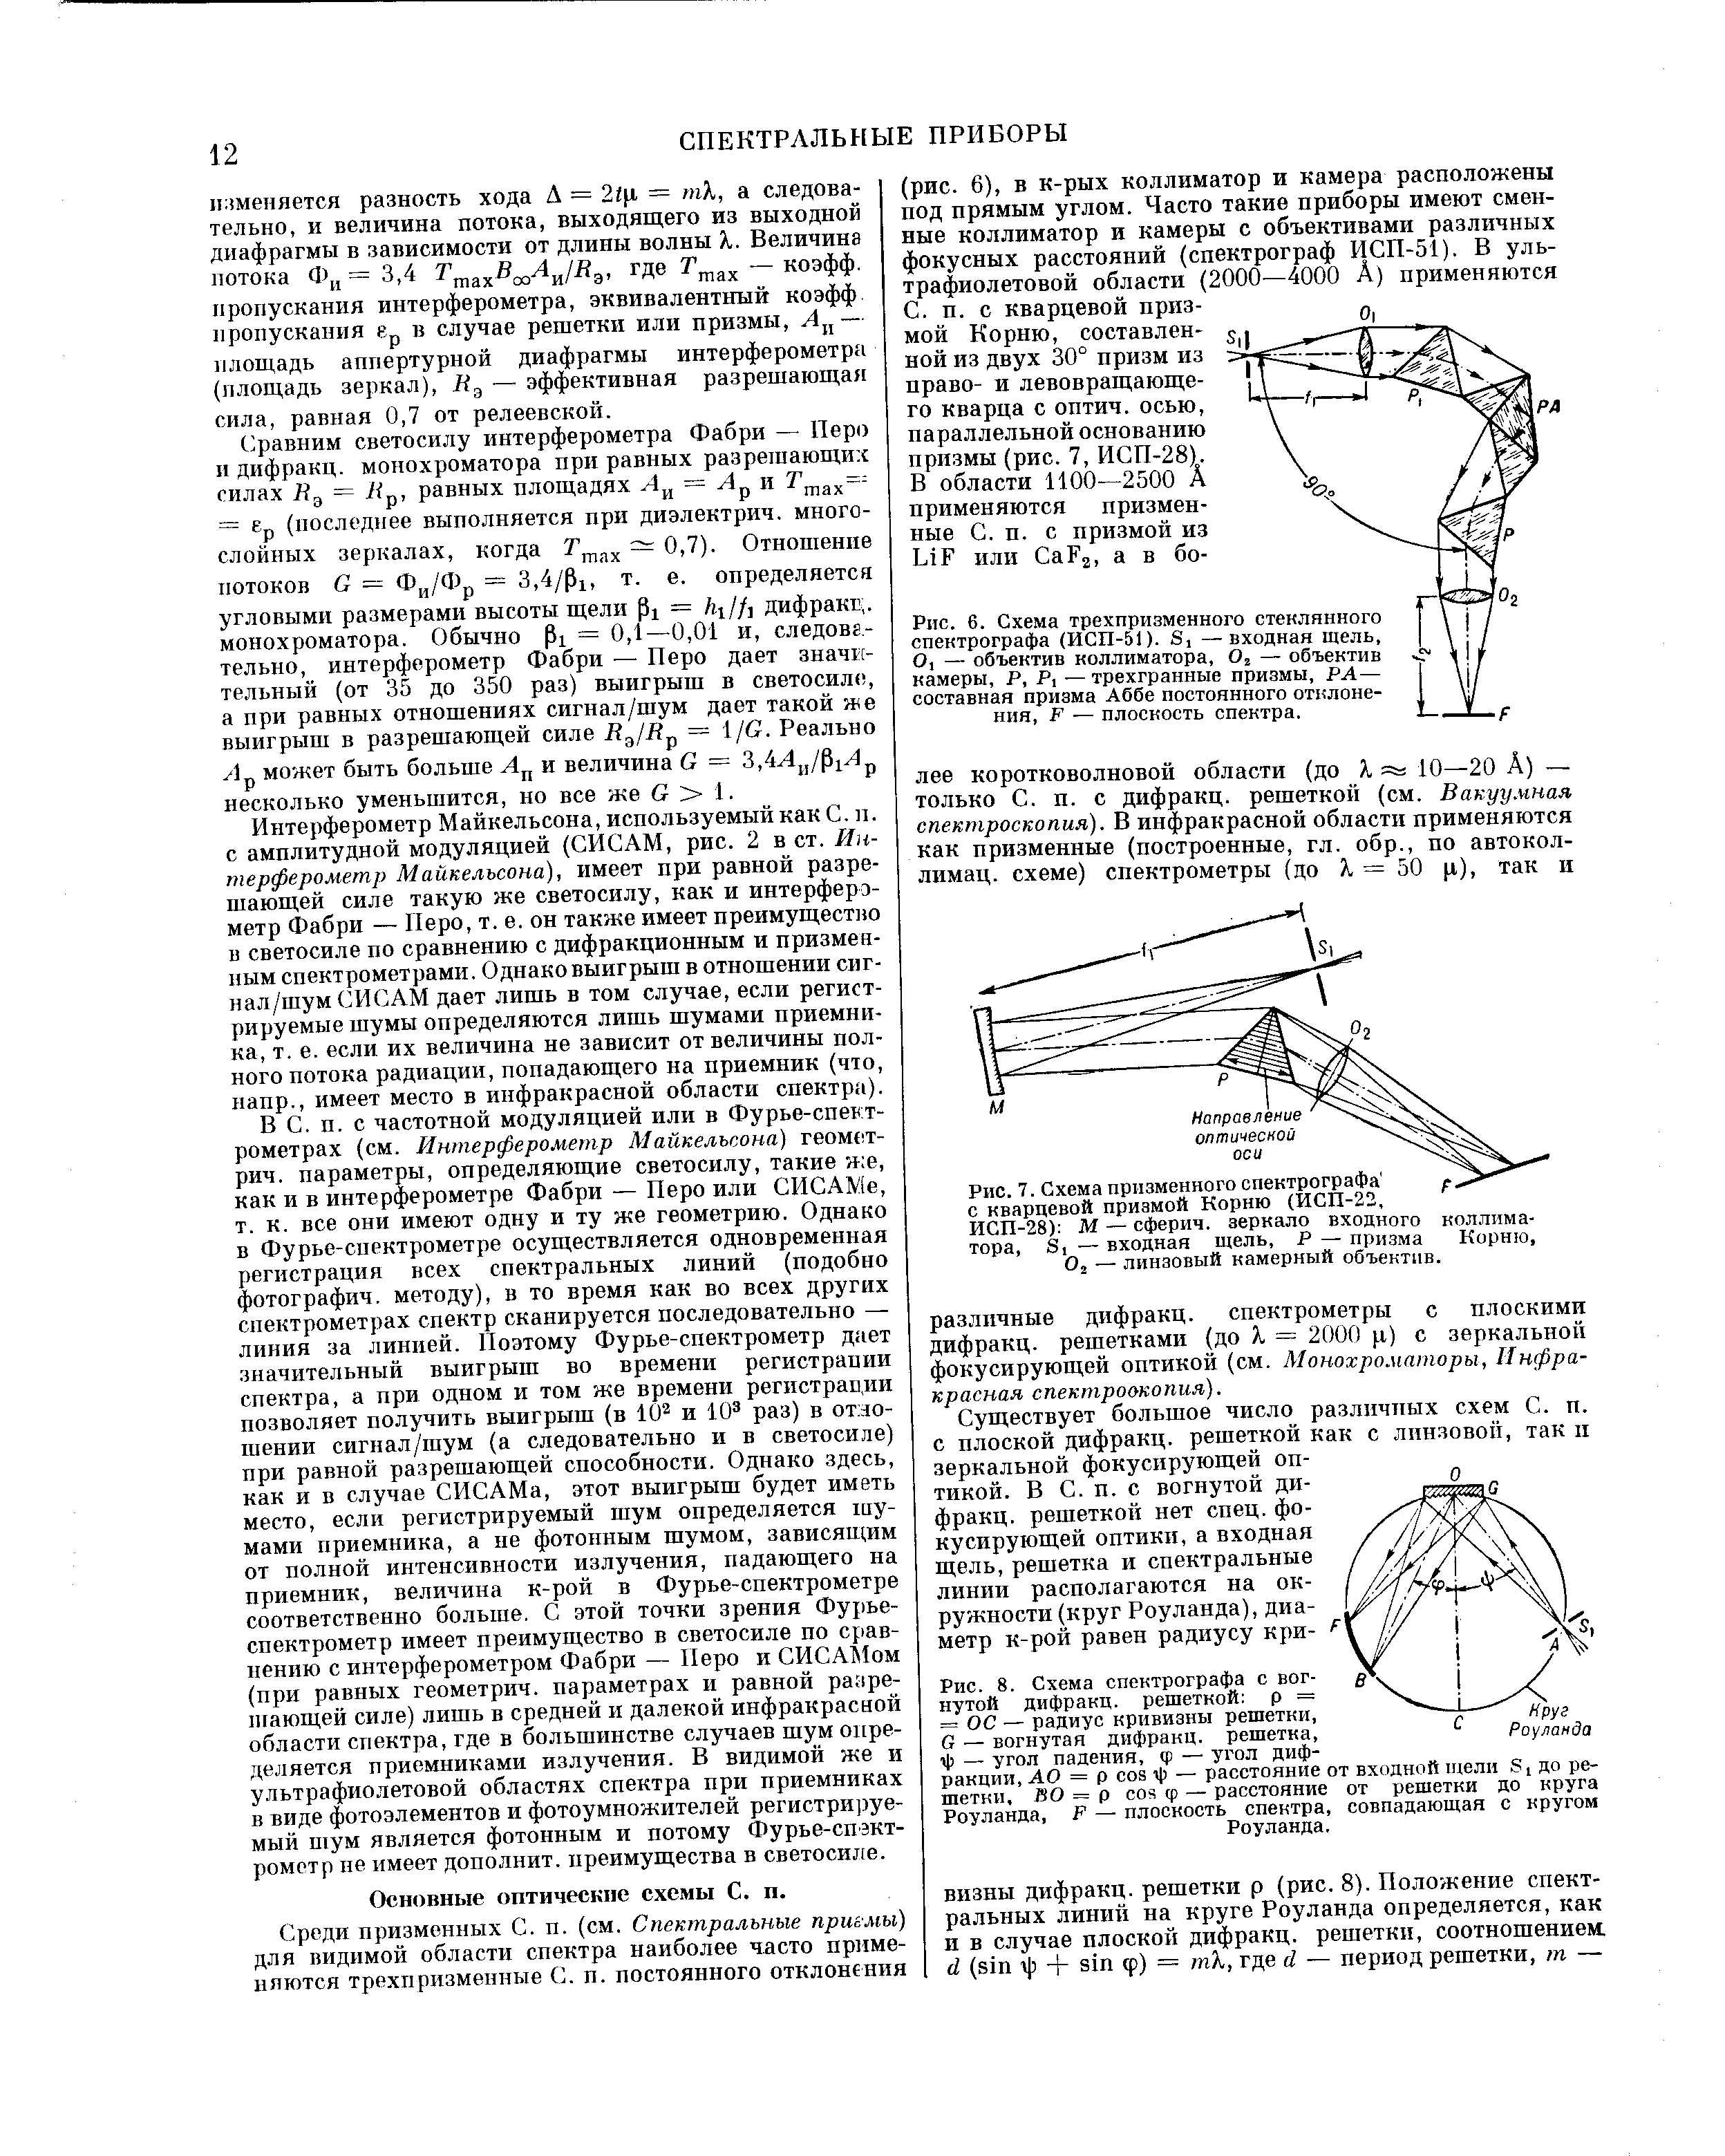 Рис. 7, Схема призменного спектрографа с кварцевой призмой Корню (ИСП-22,
